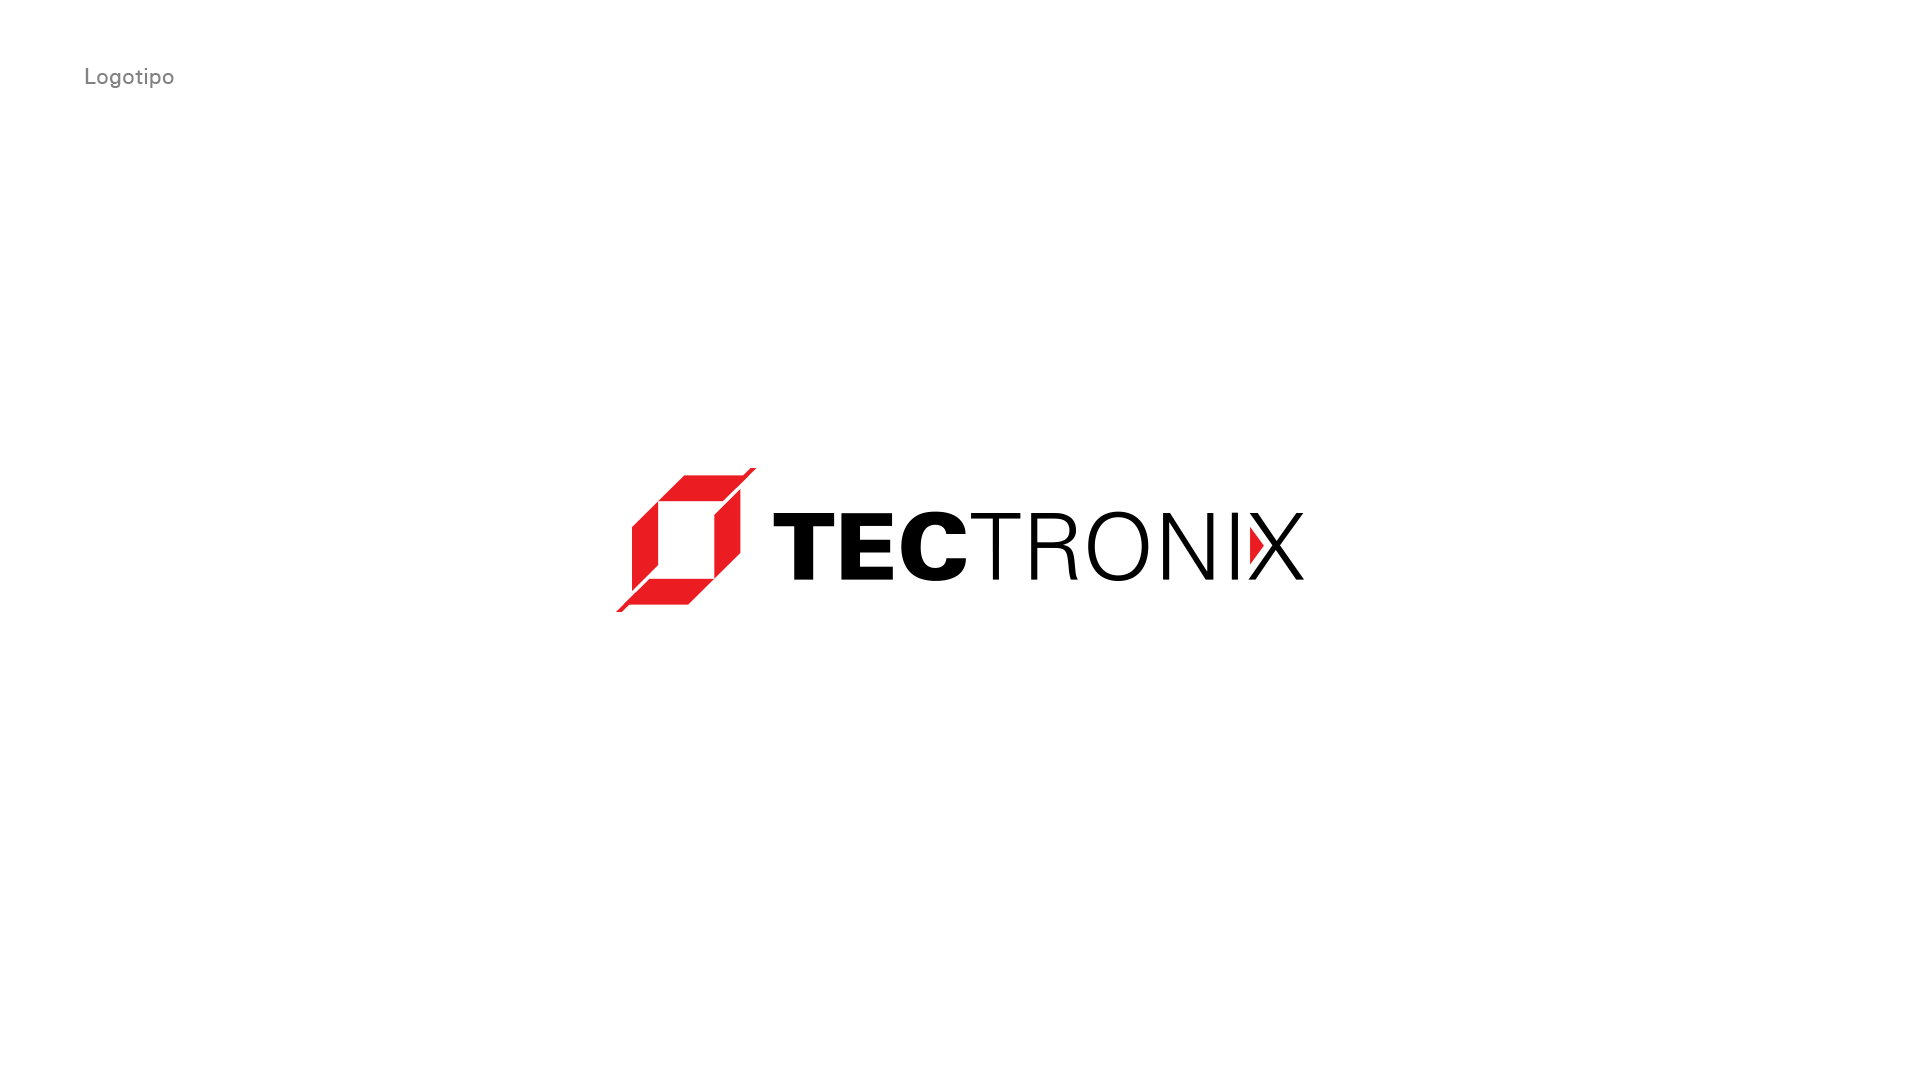 Identidad-corporativa-tectronix-logo-fondo-blanco